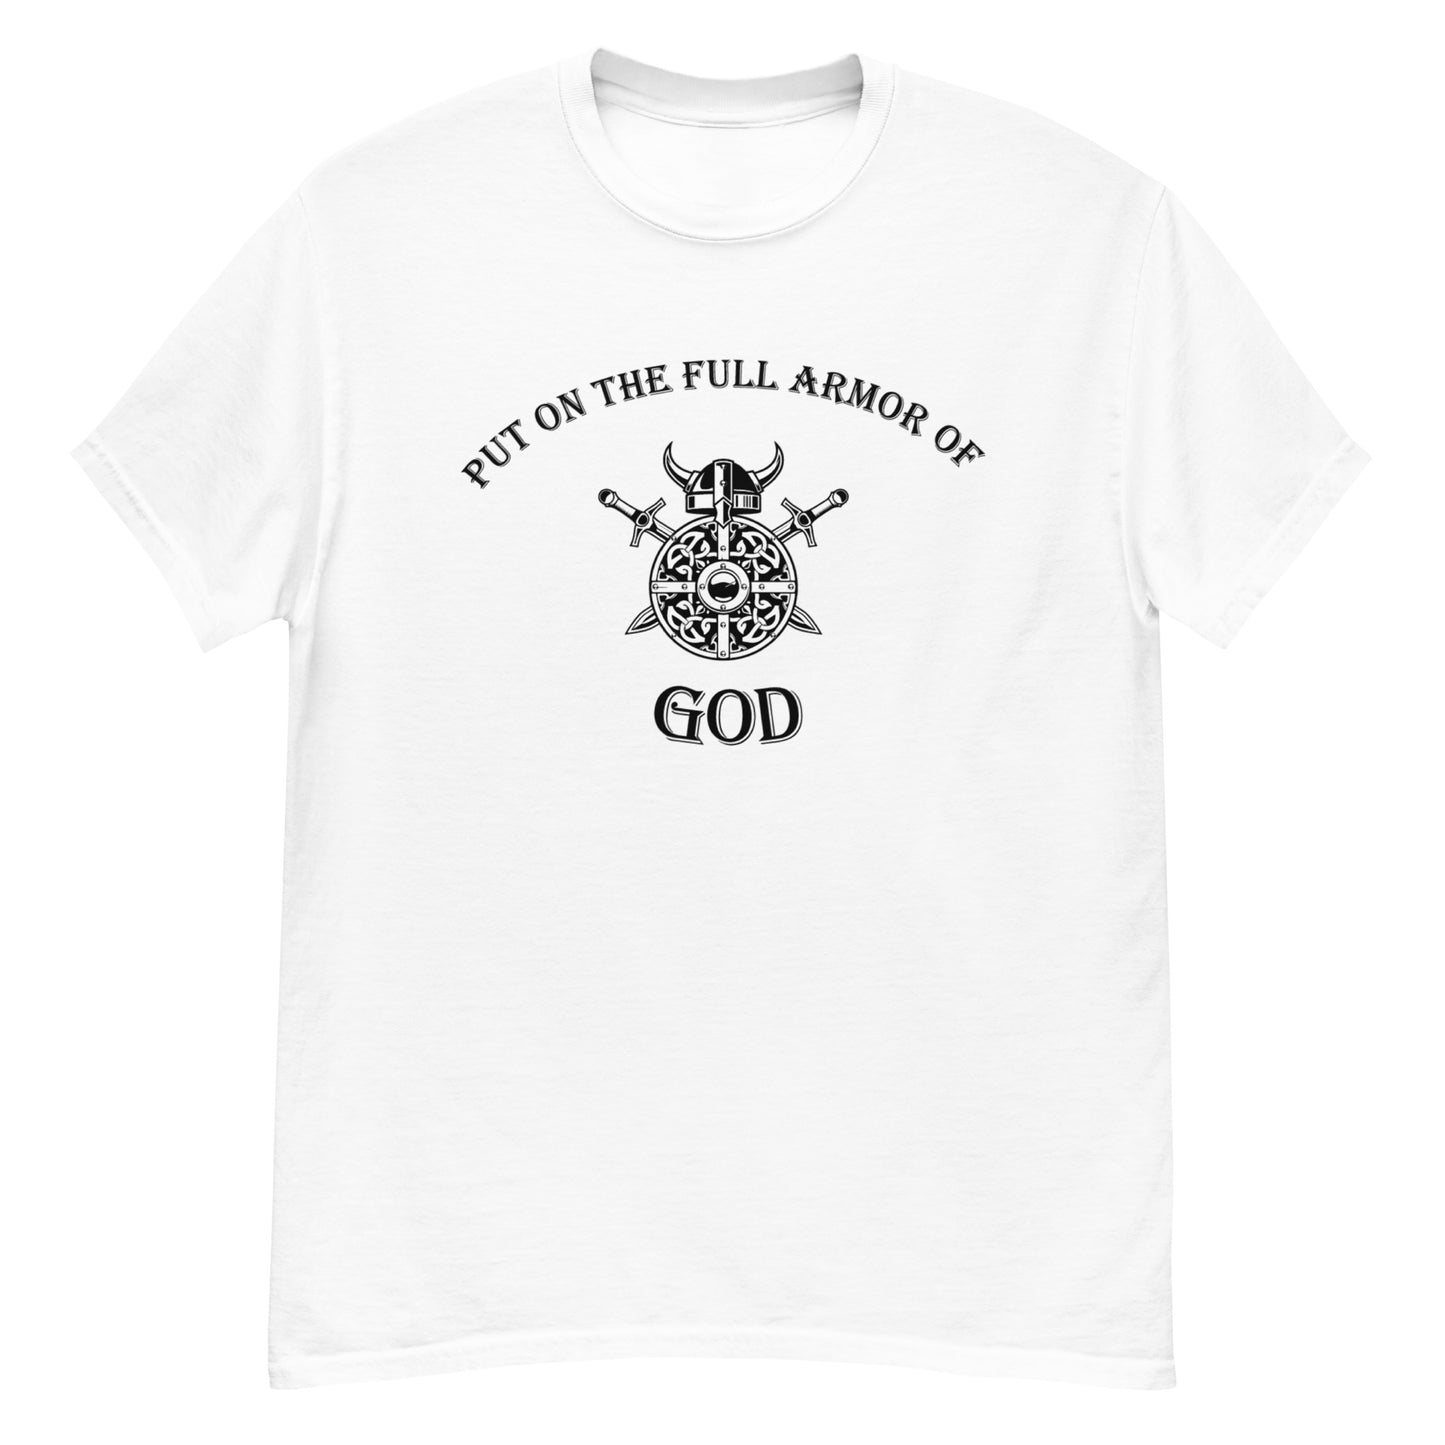 Put on the Full Armor of God t-shirt